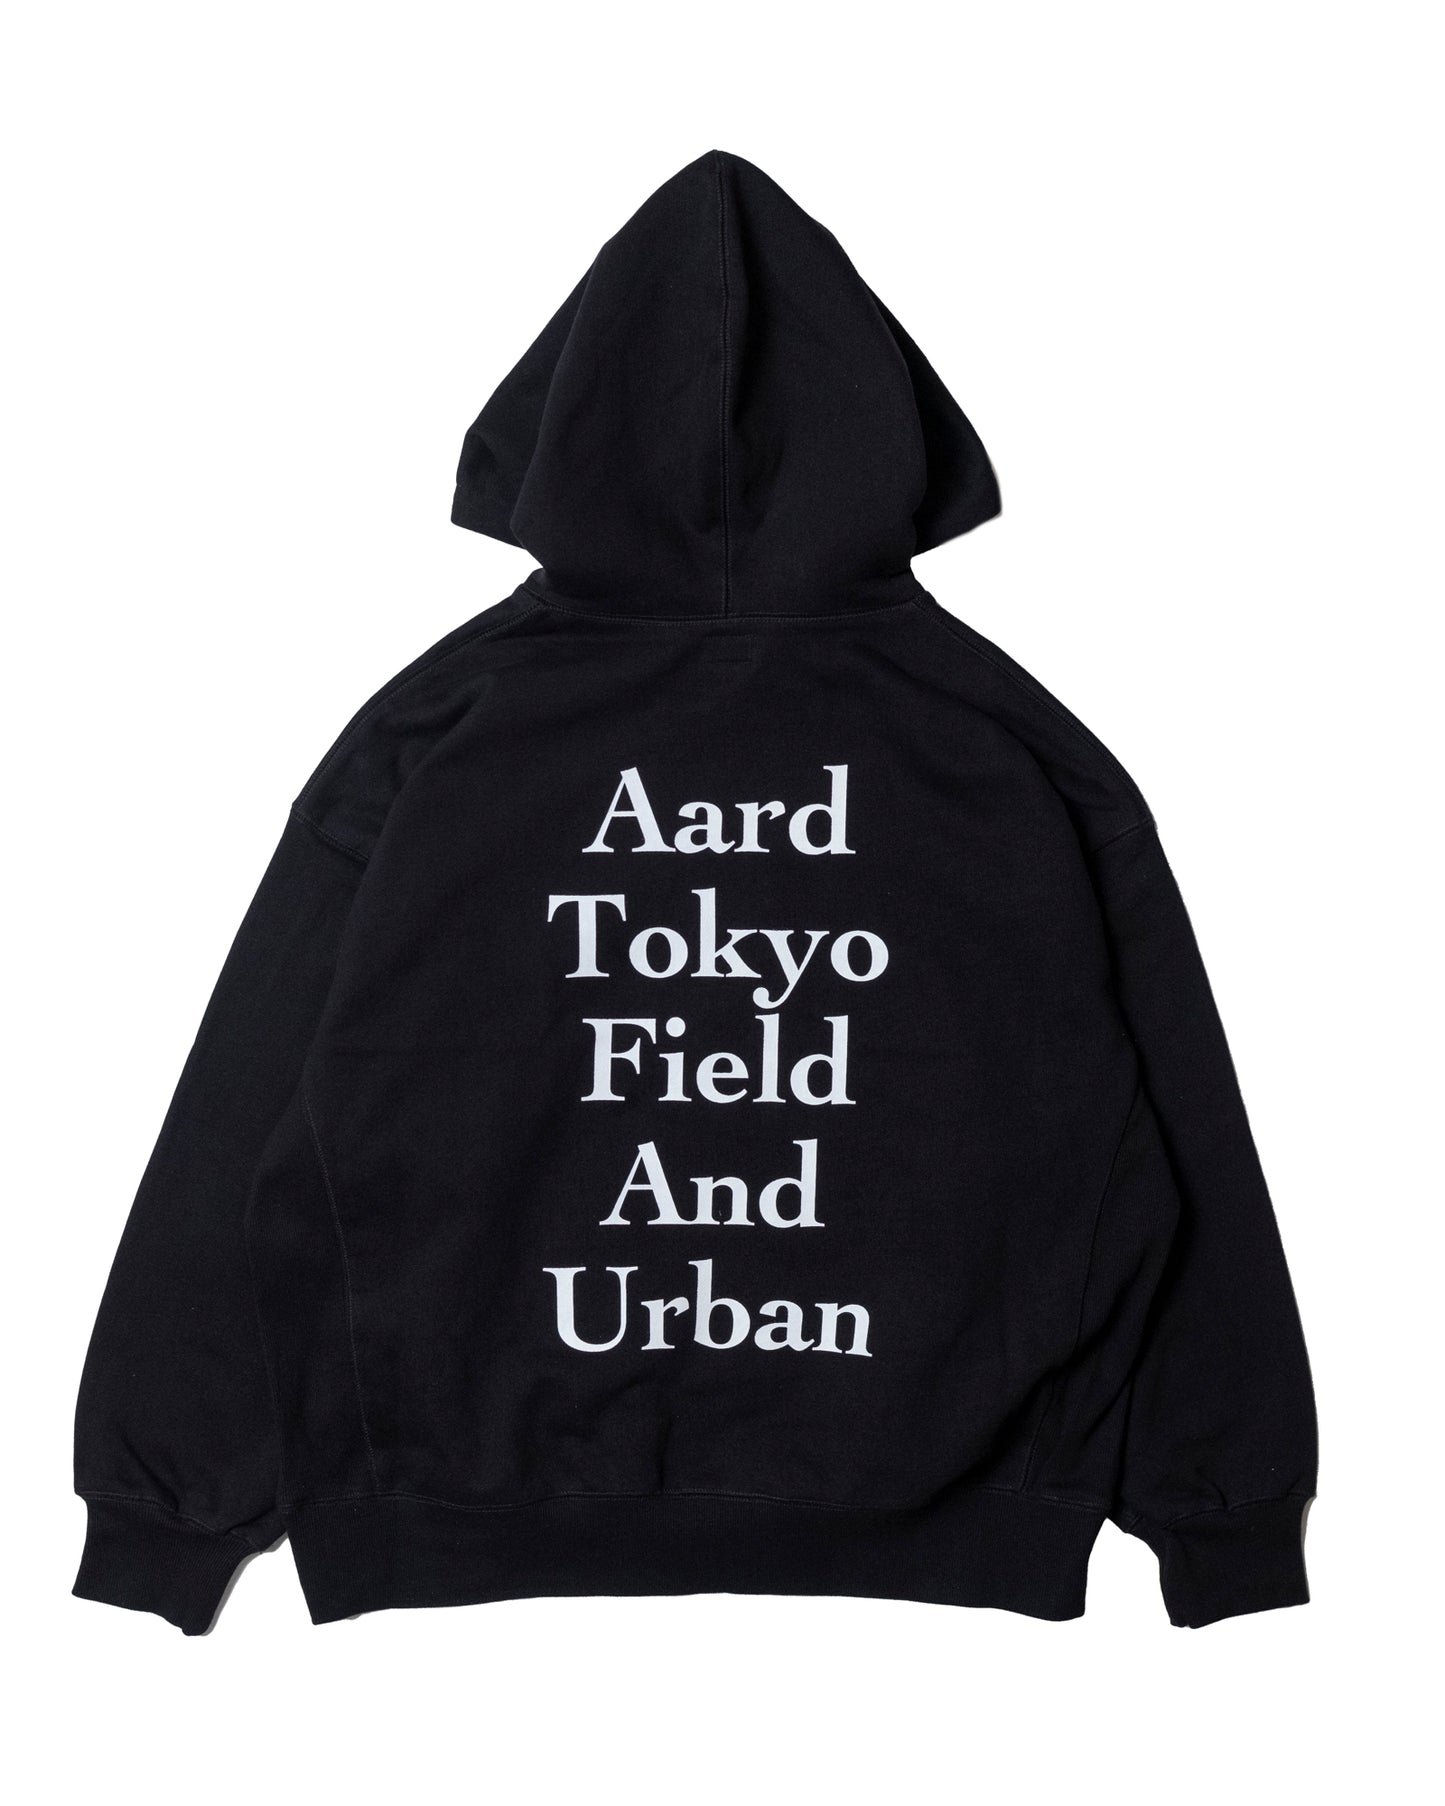 Aard Tokyo Field And Urban Hoodie Black